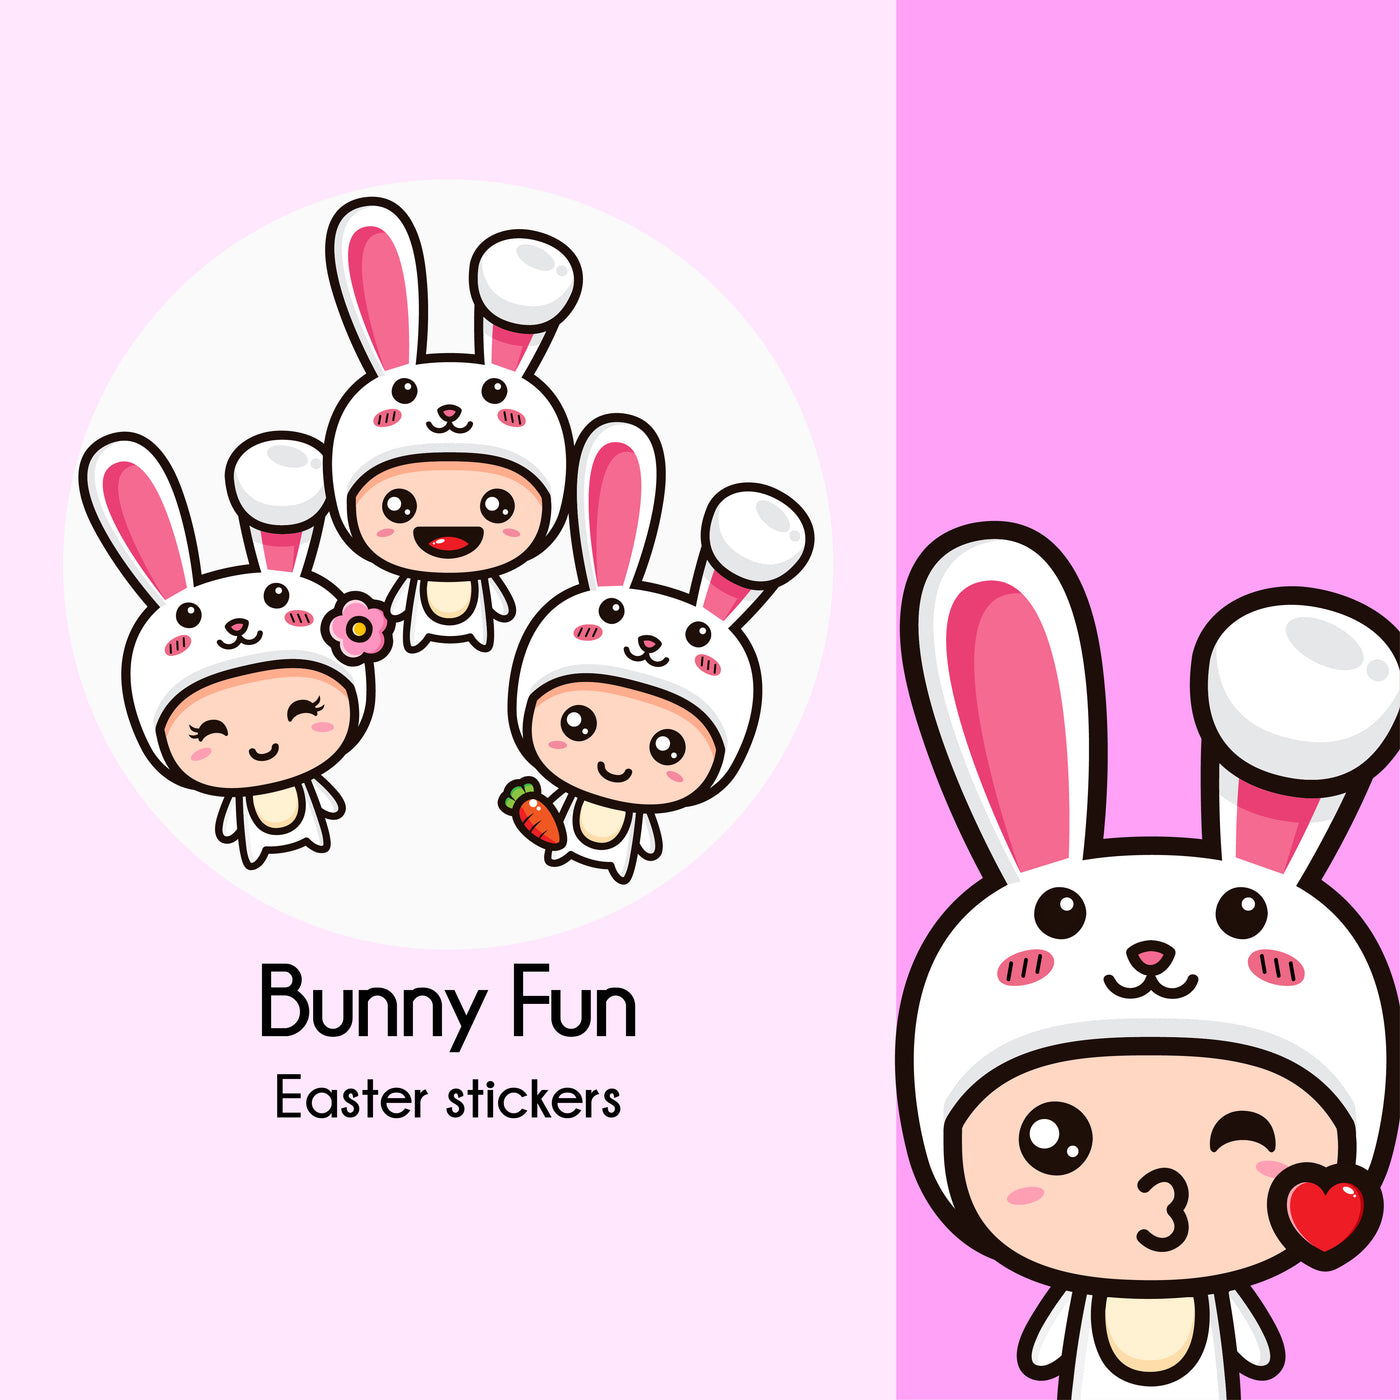 Bunny Fun